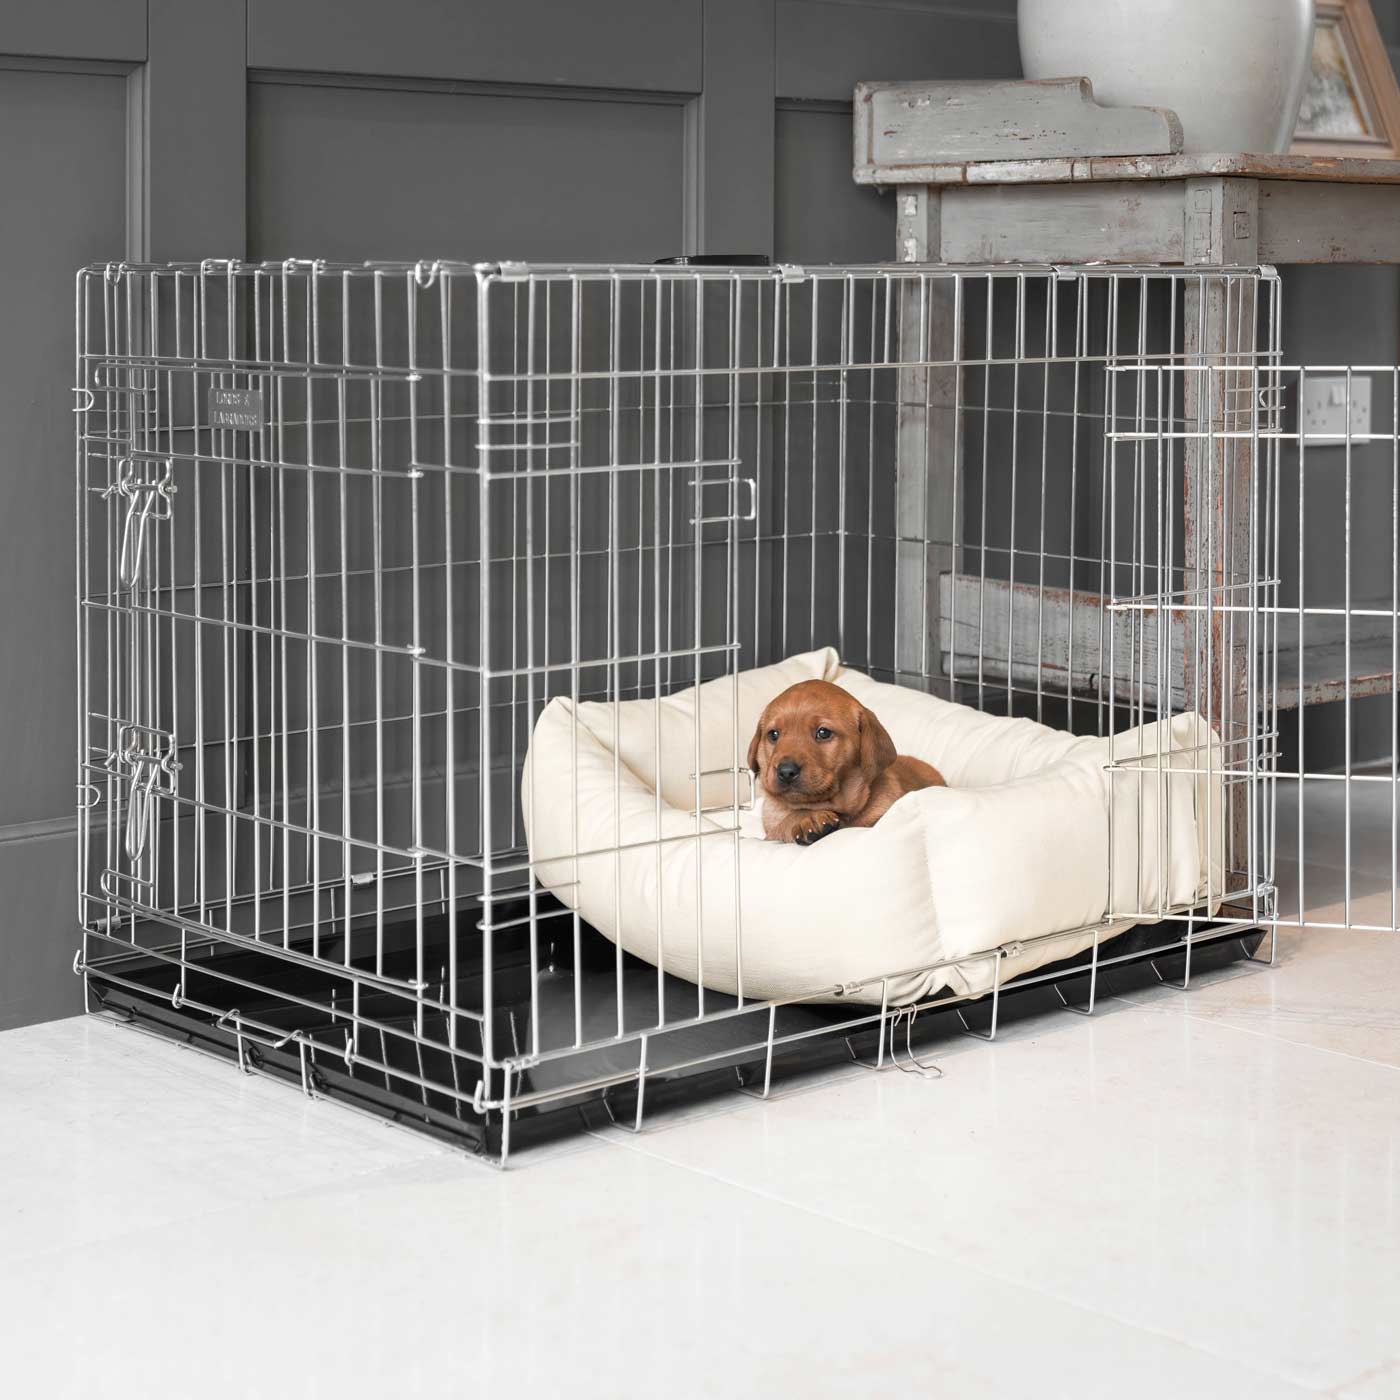 Cozy & Calming Puppy Cage Bed - Savanna Collection